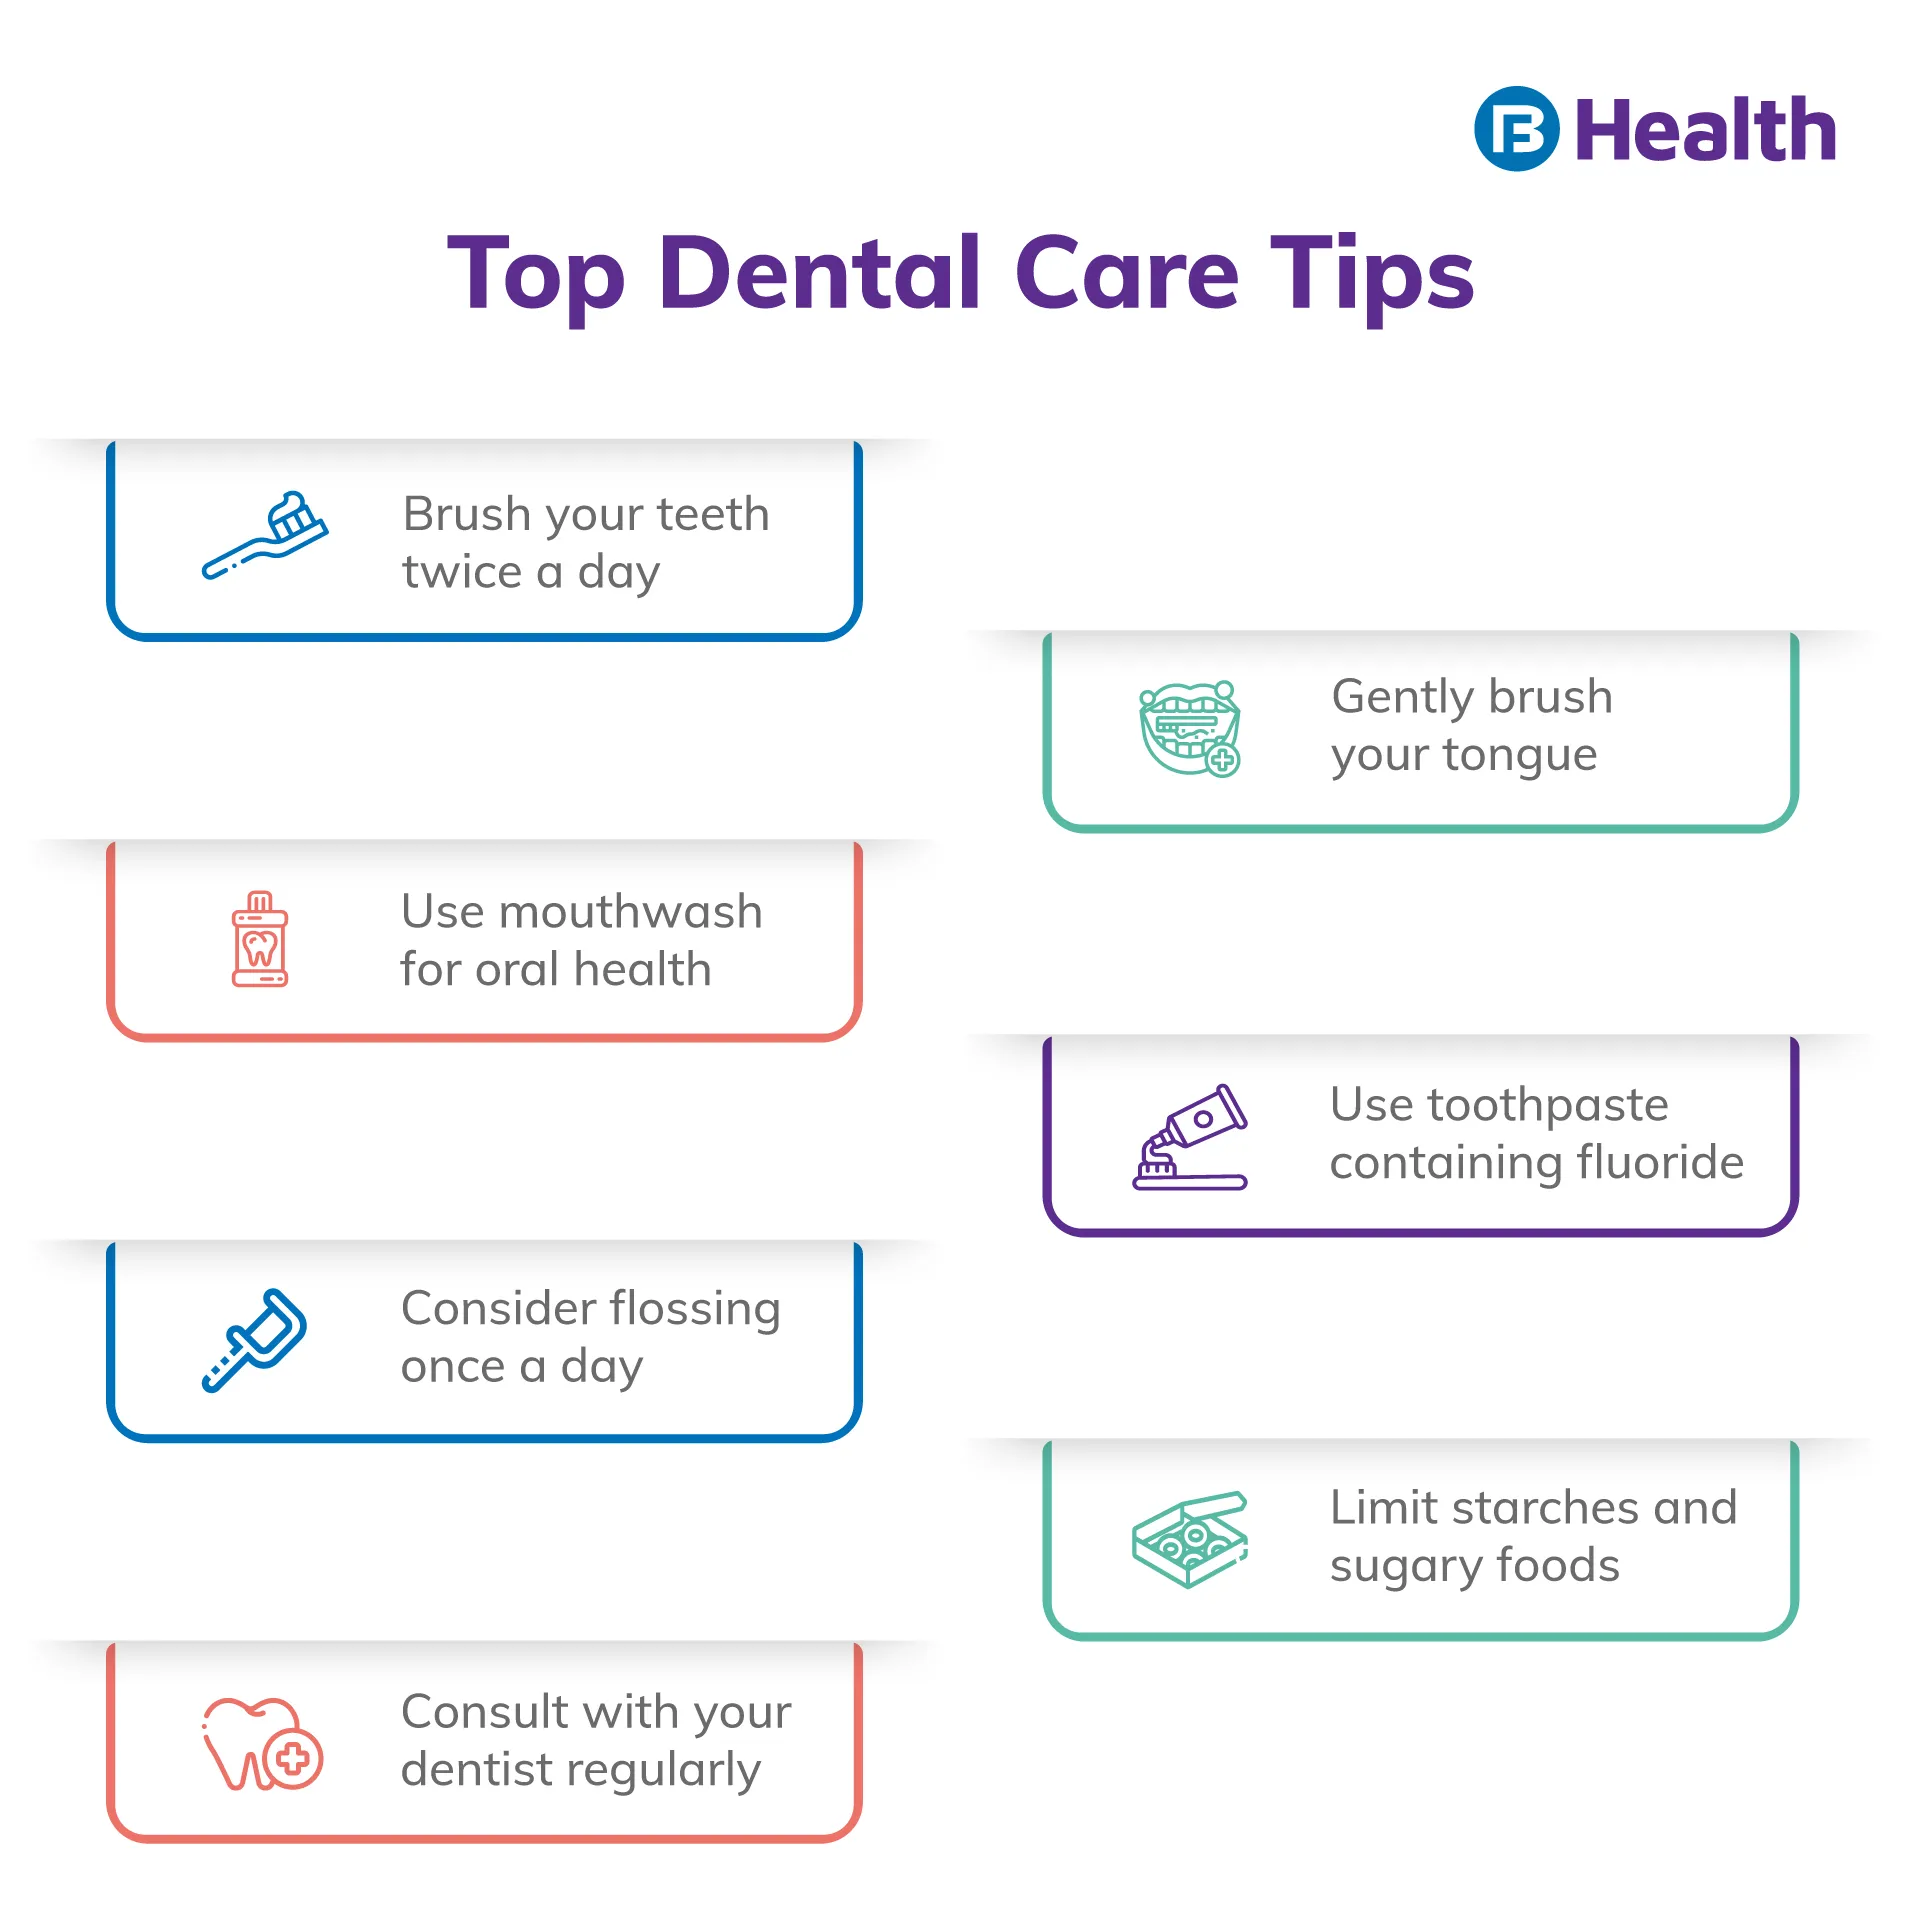 tips for dental care